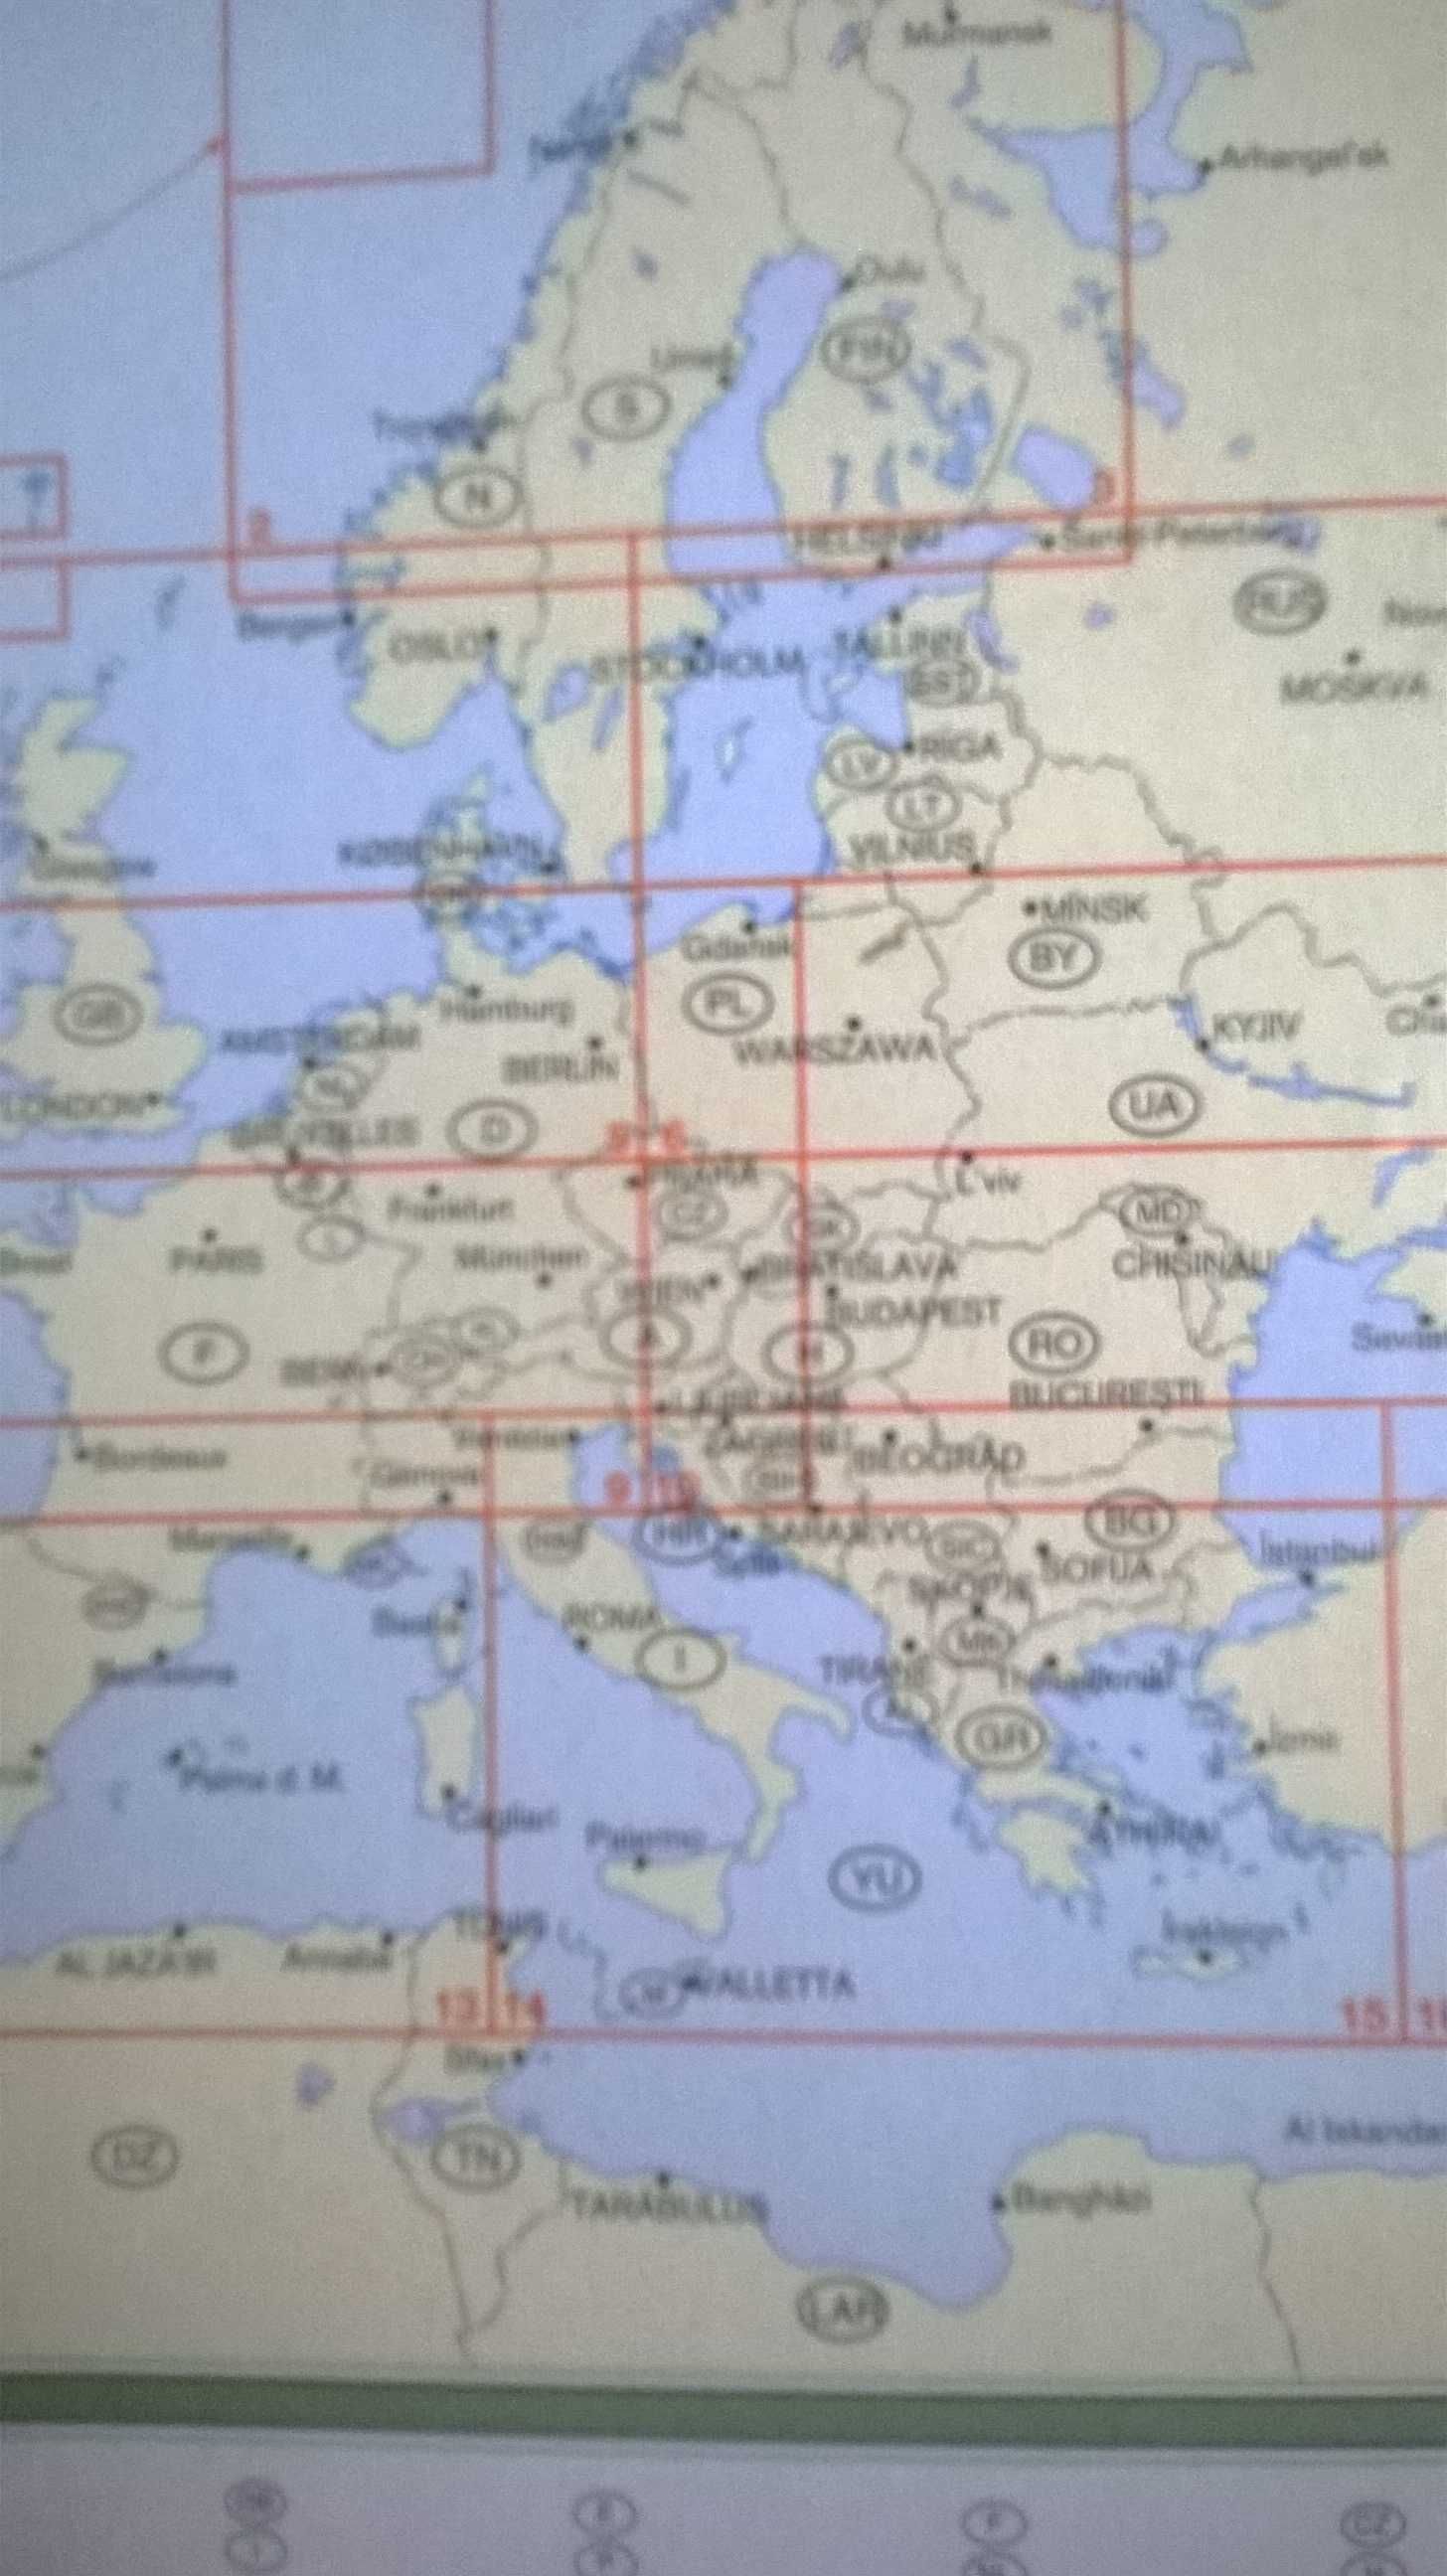 Atlas polska " Marco Polo "